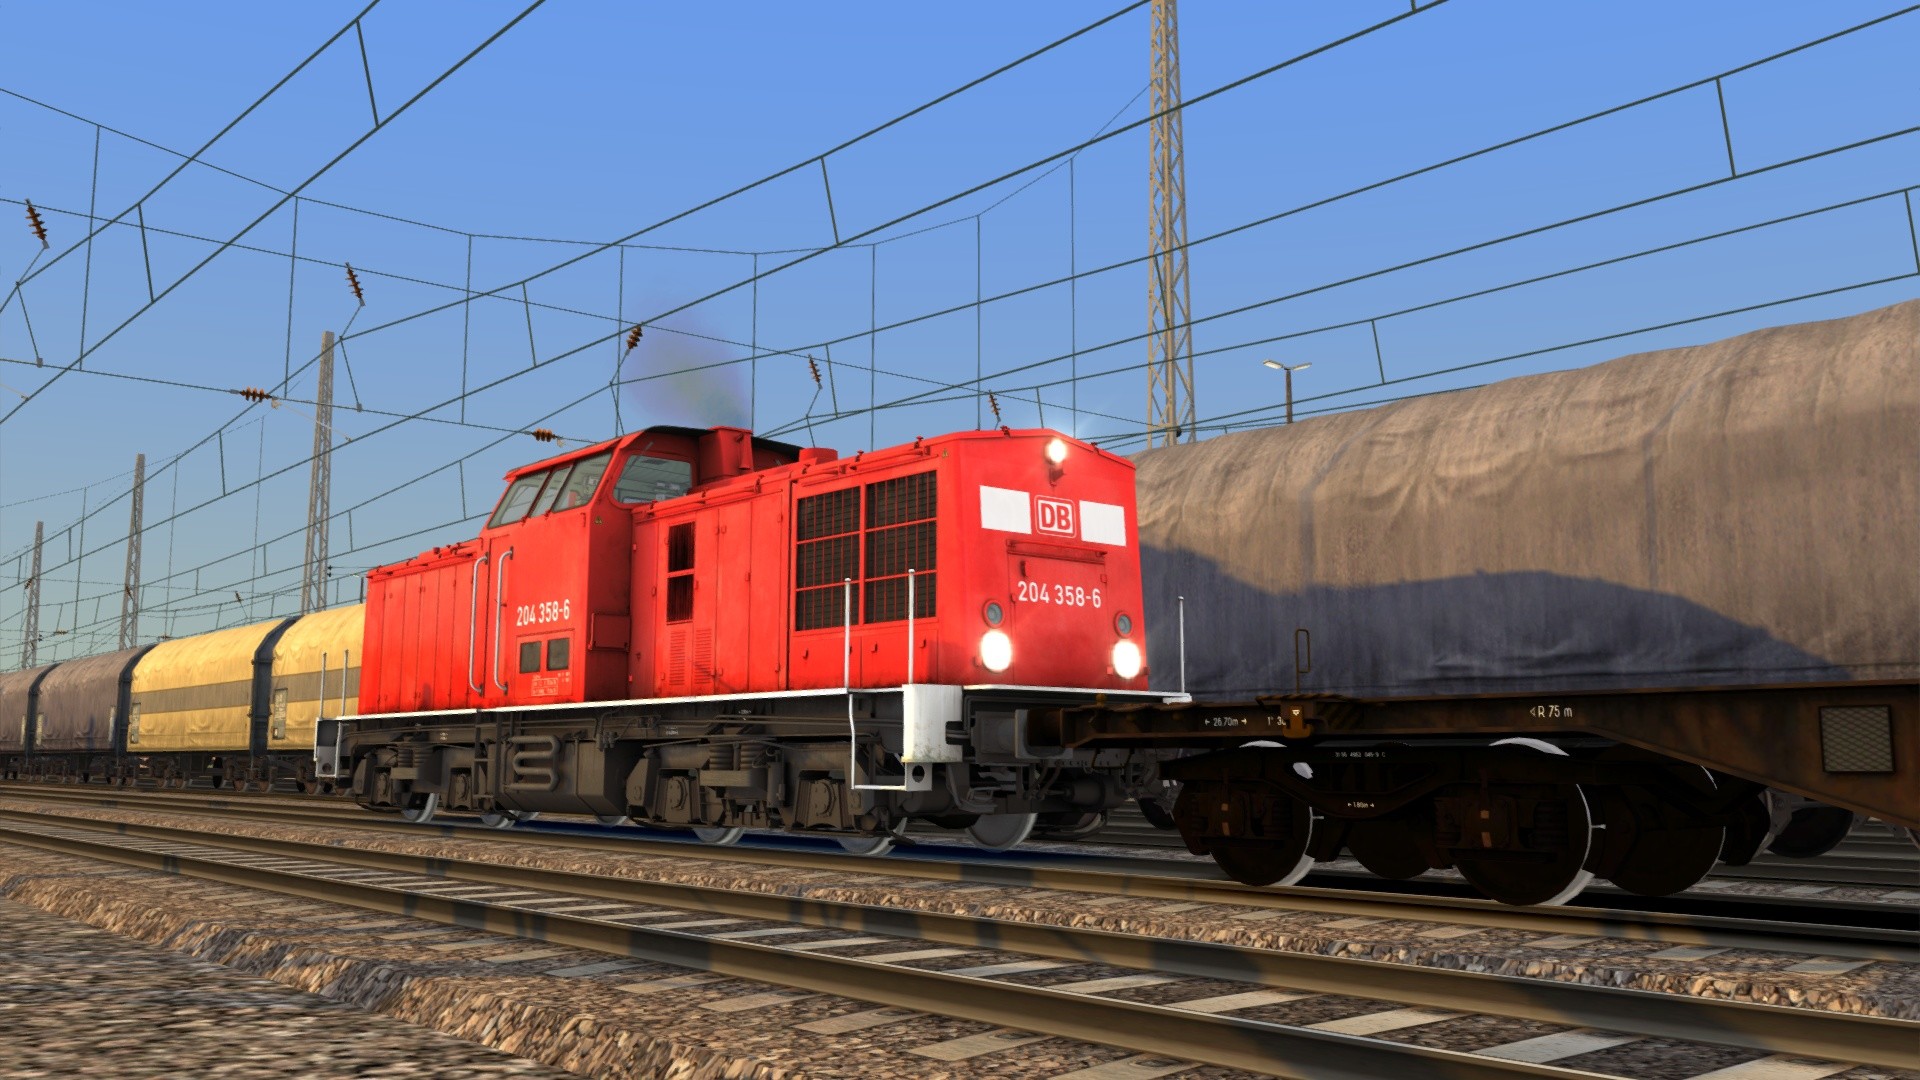 Train Simulator - DB BR 204 Loco Add-On DLC Steam CD Key 0.9 USD